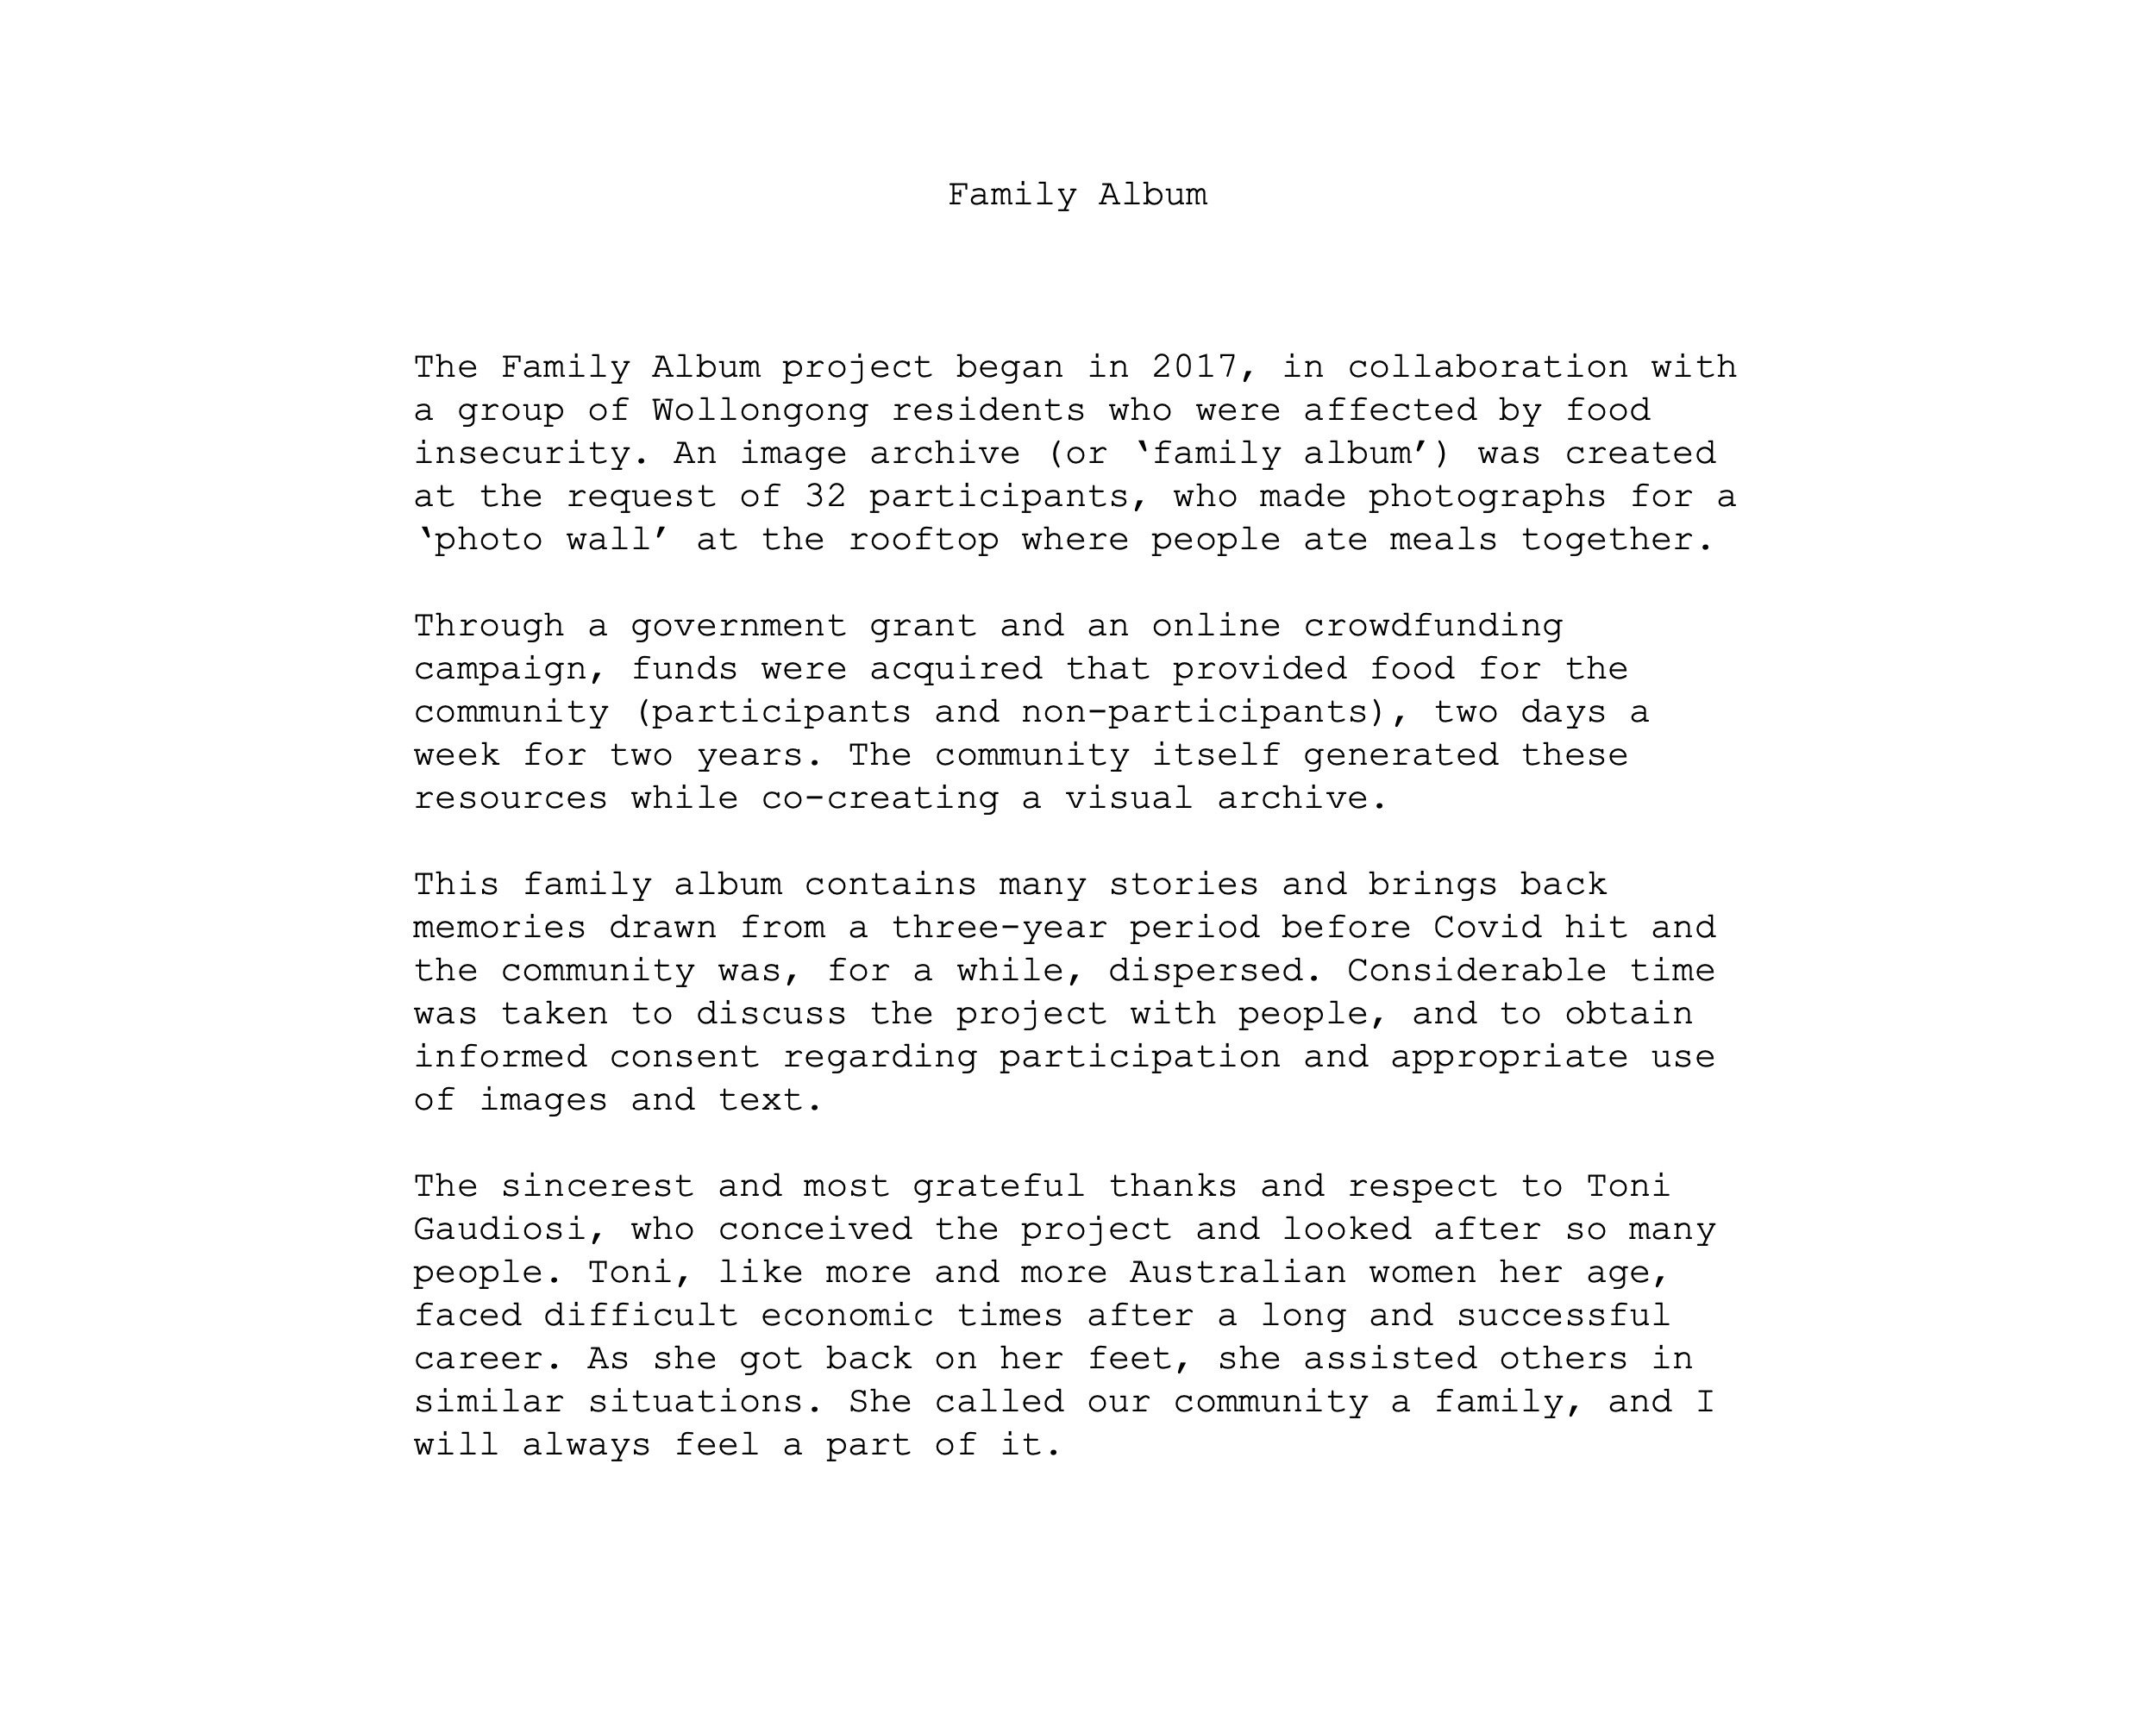 family album brief text.jpg